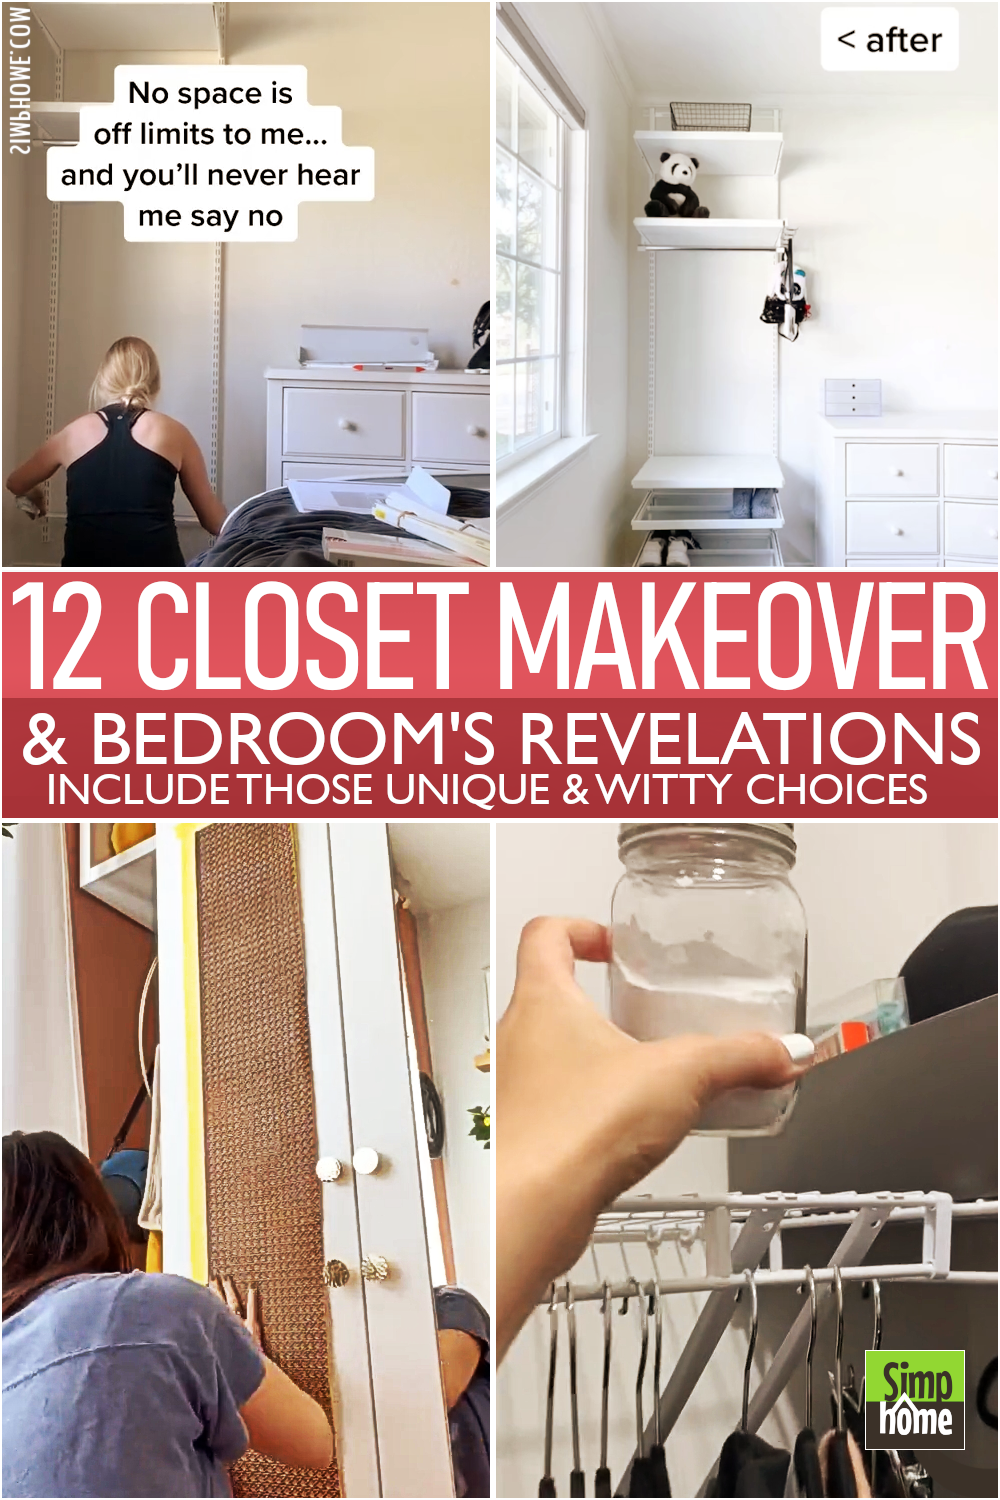 12 Closet makeover revealed via Simphome.com